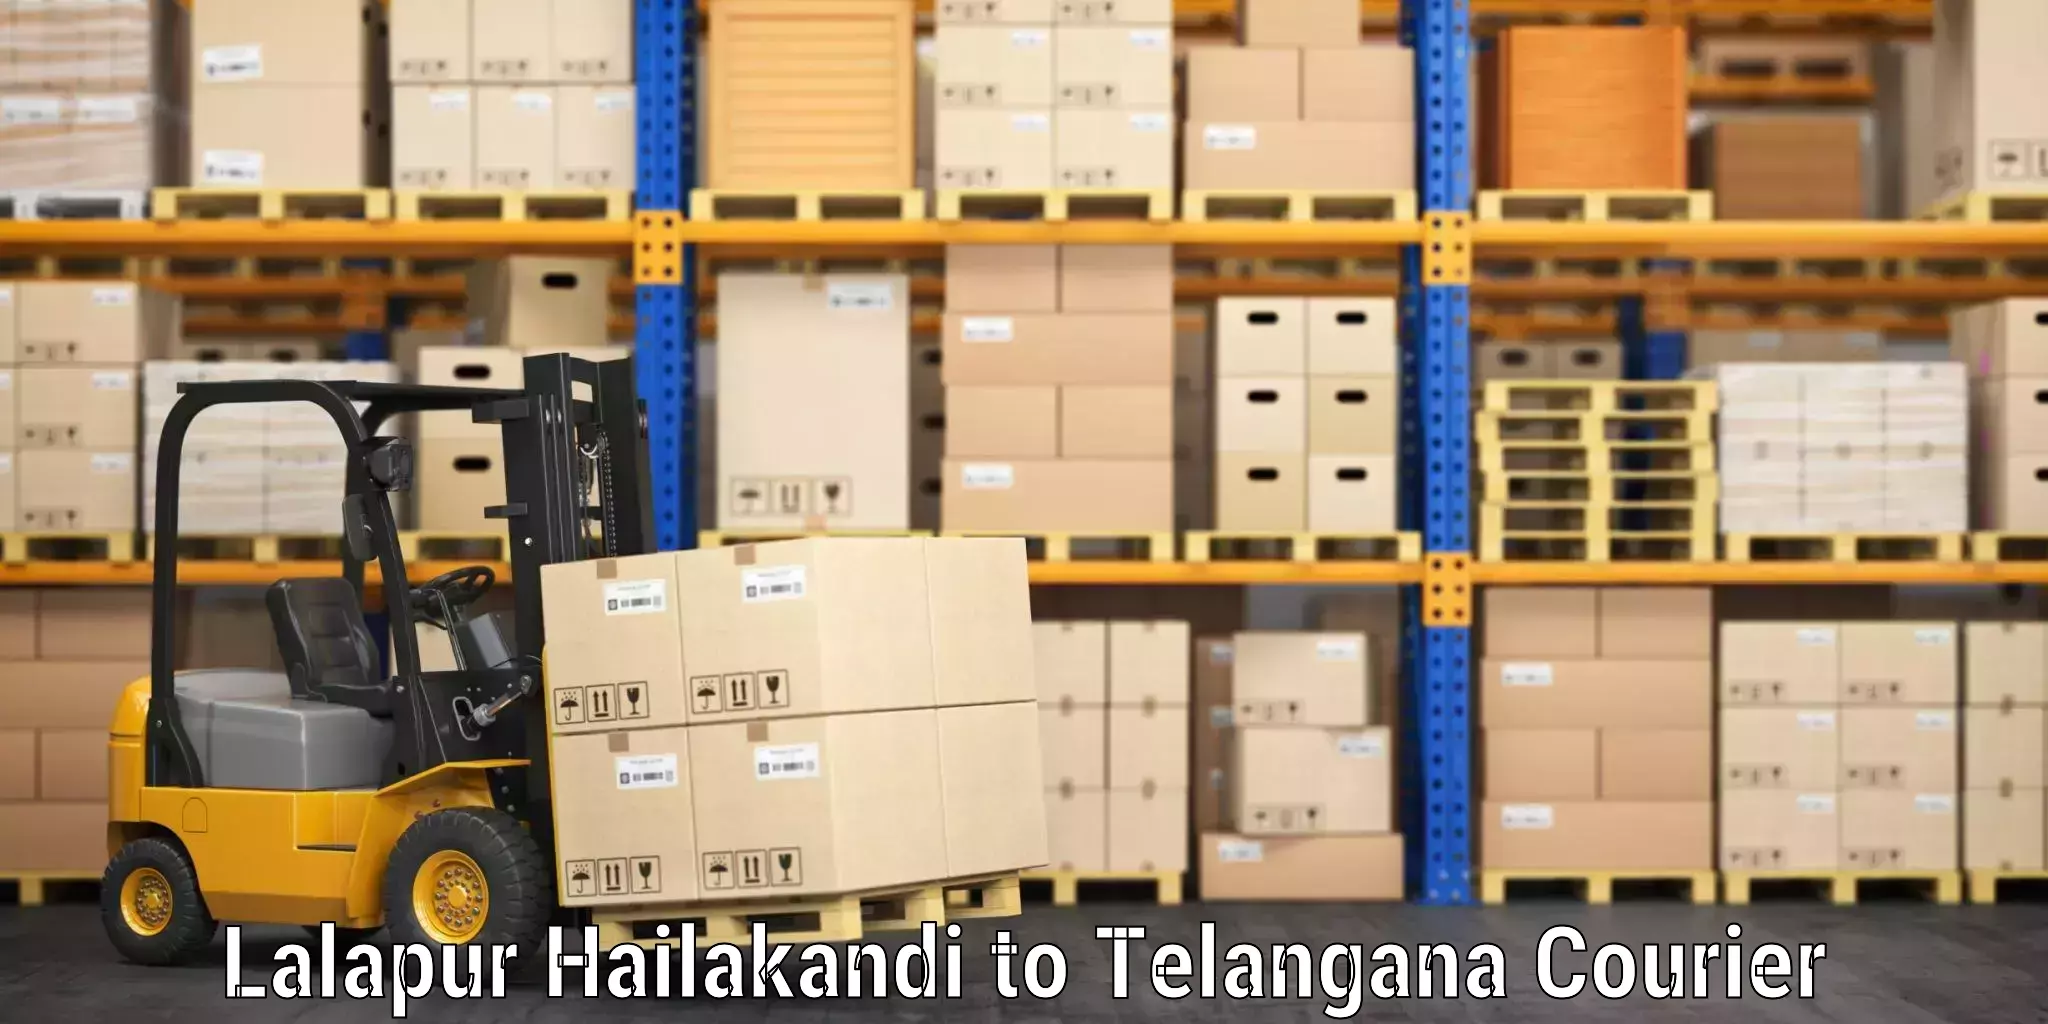 Automated luggage transport Lalapur Hailakandi to Telangana